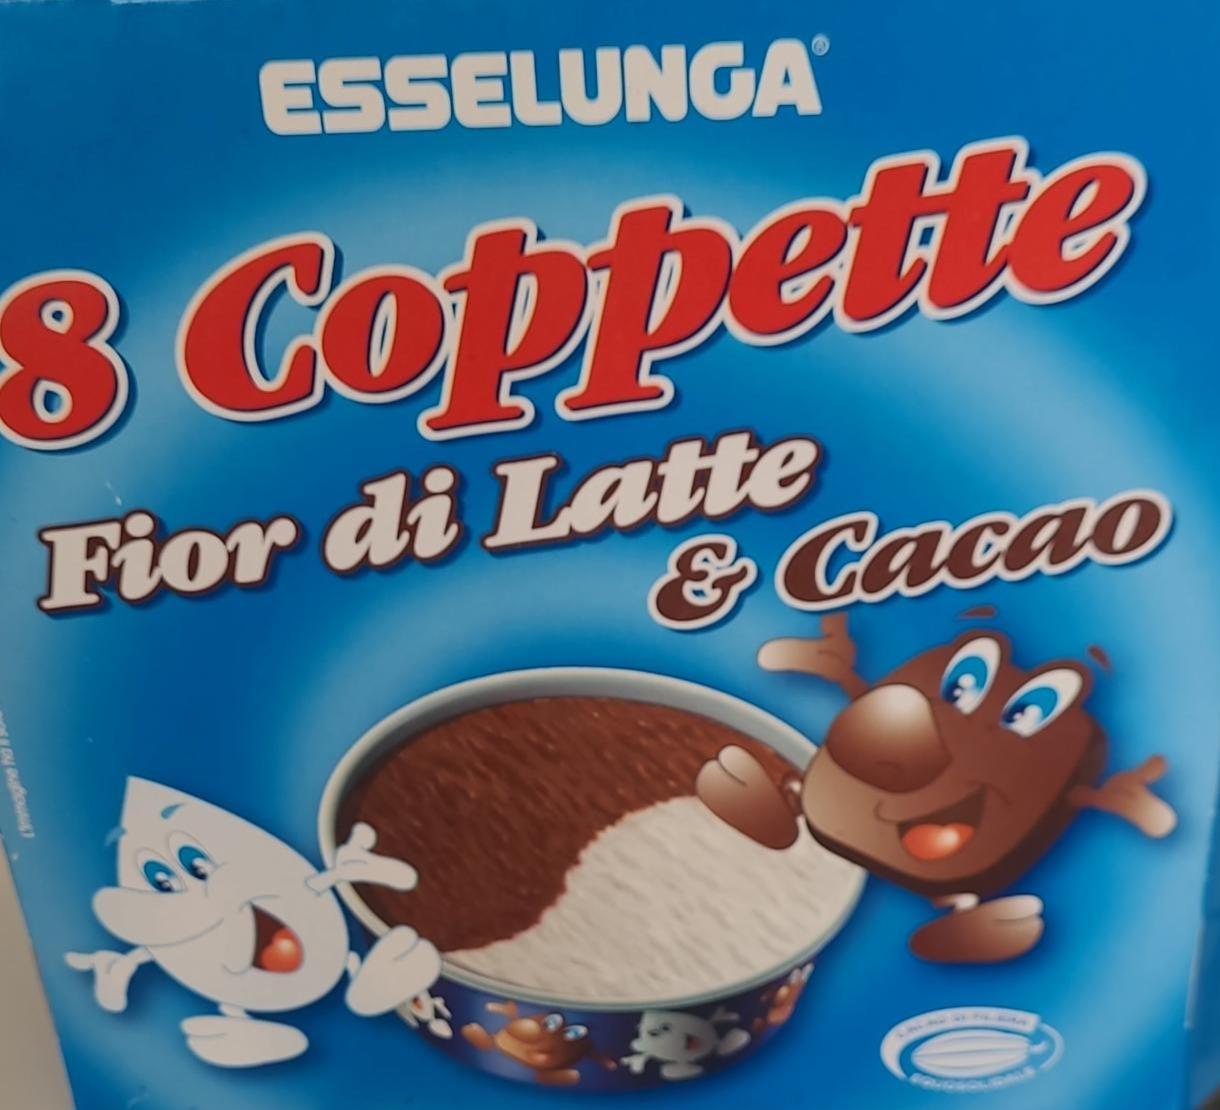 Фото - Лате 8 Coppette fior di latte & cacao Esselunga